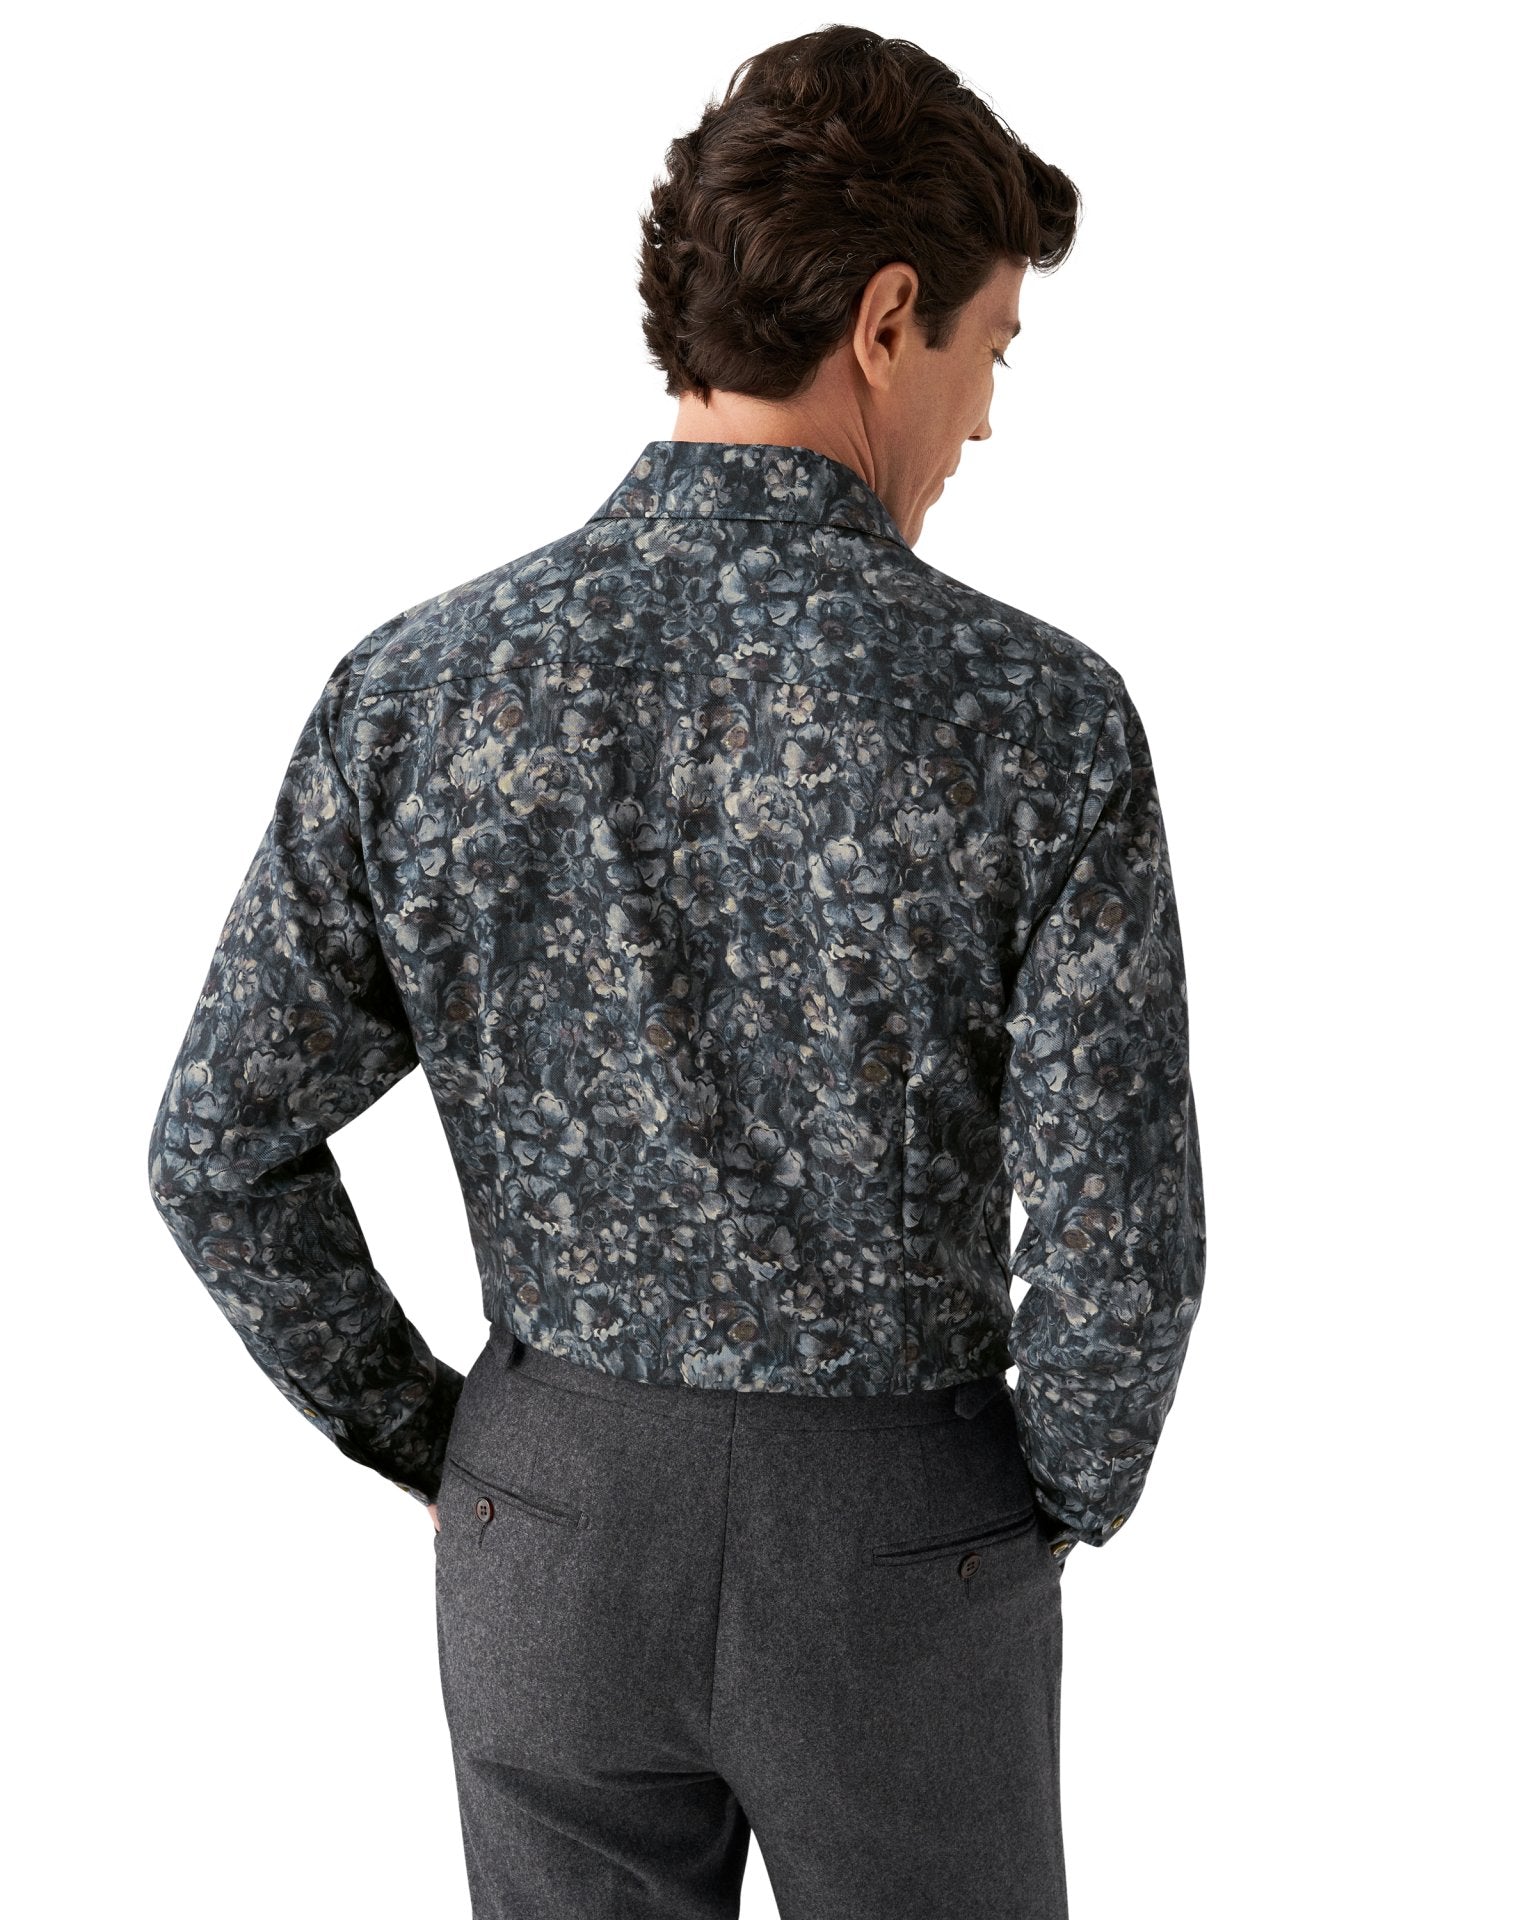 ETON - SLIM FIT Navy Floral Print Merino Wool Shirt 10001028427